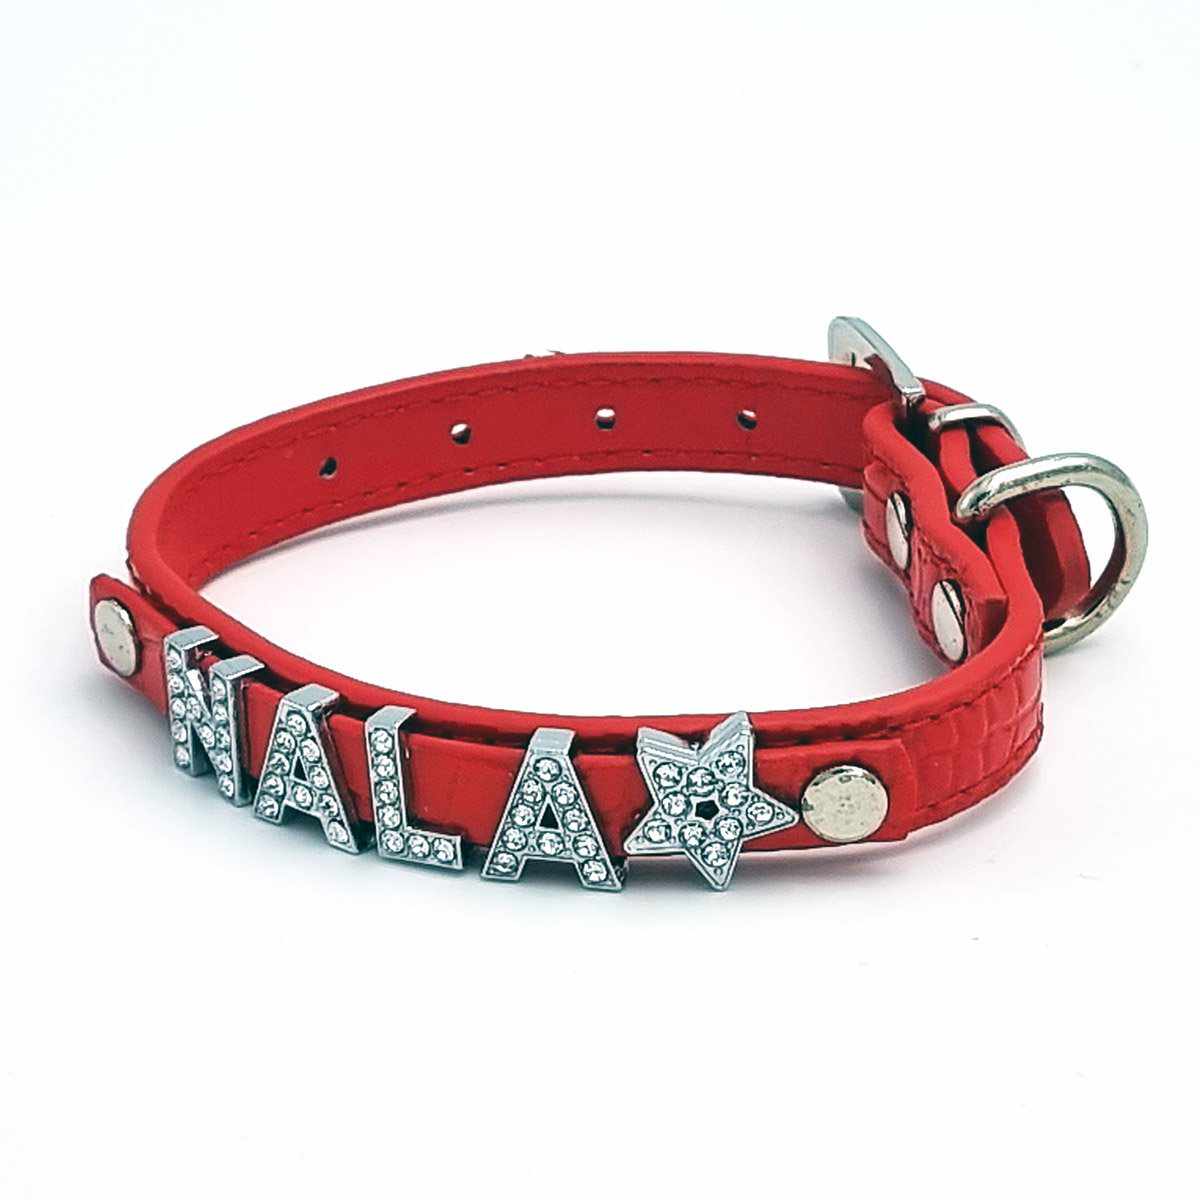 Cooles Kroko Hundehalsband personalisiert mit Glitzersteinen + Symbol